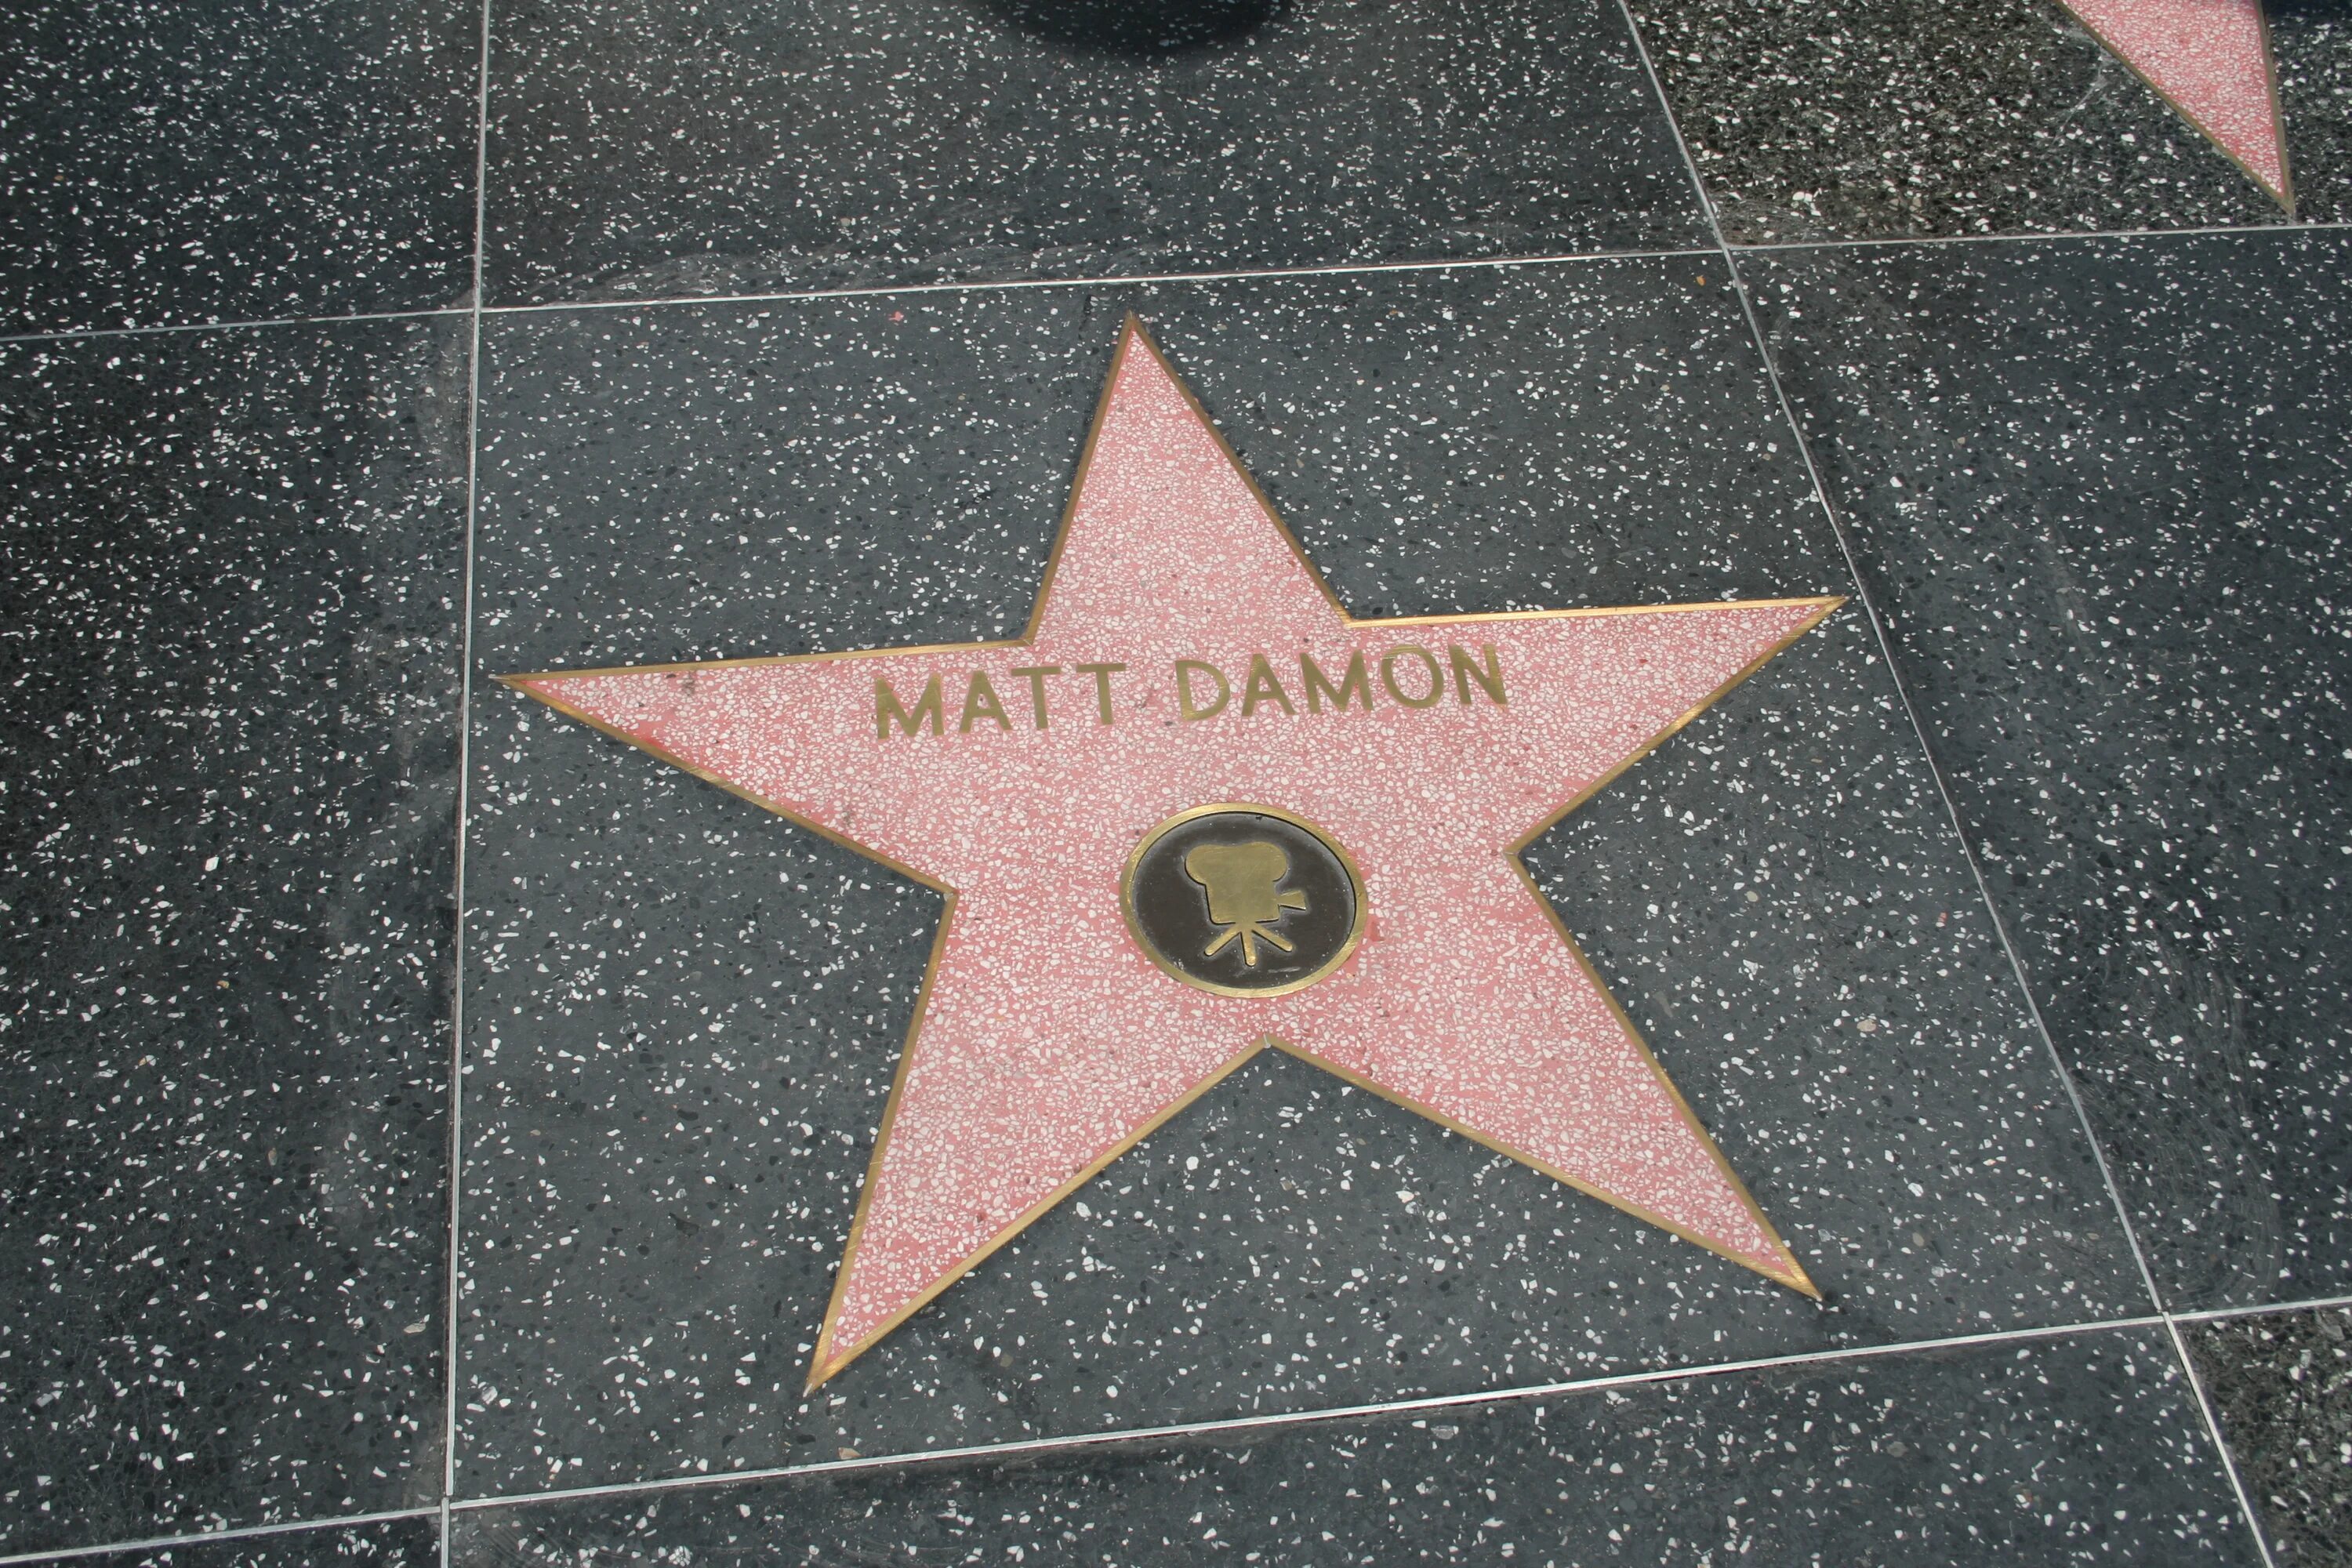 Голливудская аллея славы Винни пух. Своими руками"Hollywood Star". Мэтт Деймон на аллее славы. Памятник постели в Голливуде.